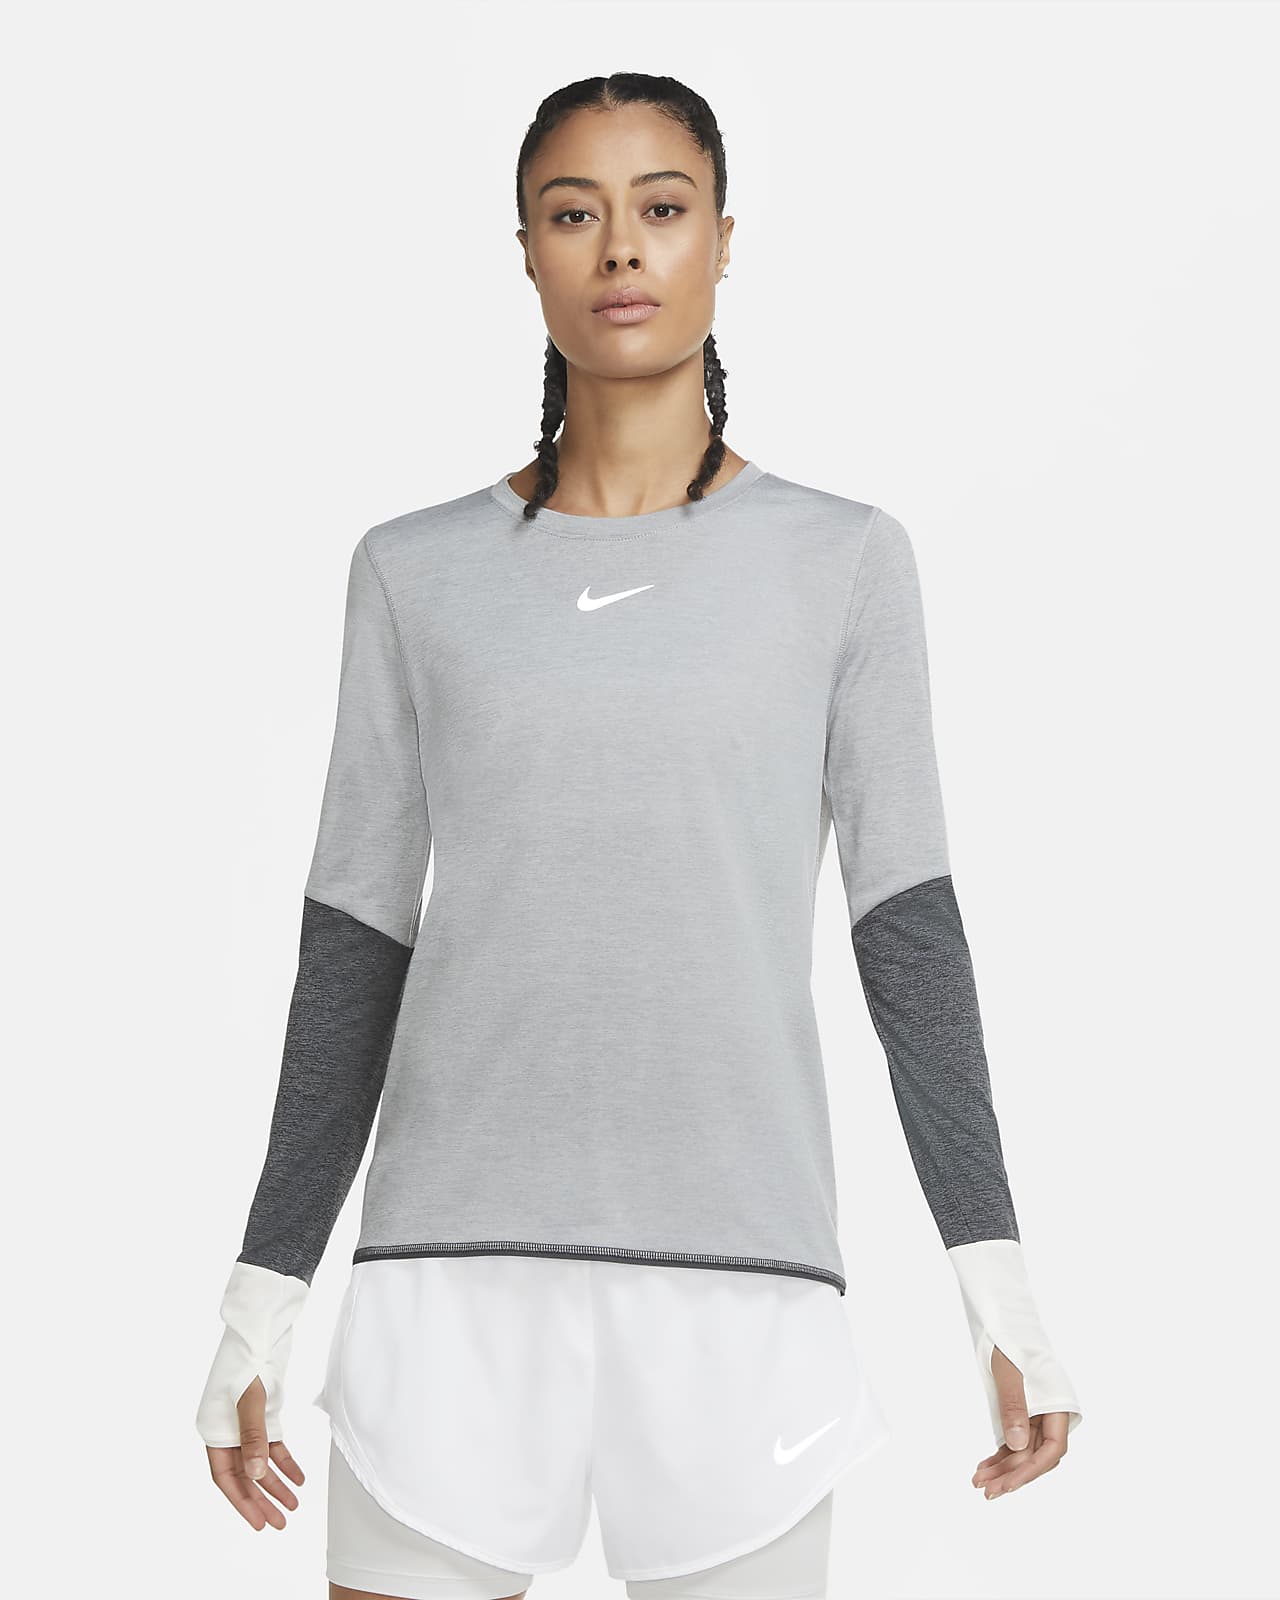 Nike Women's Long-Sleeve Running Top 